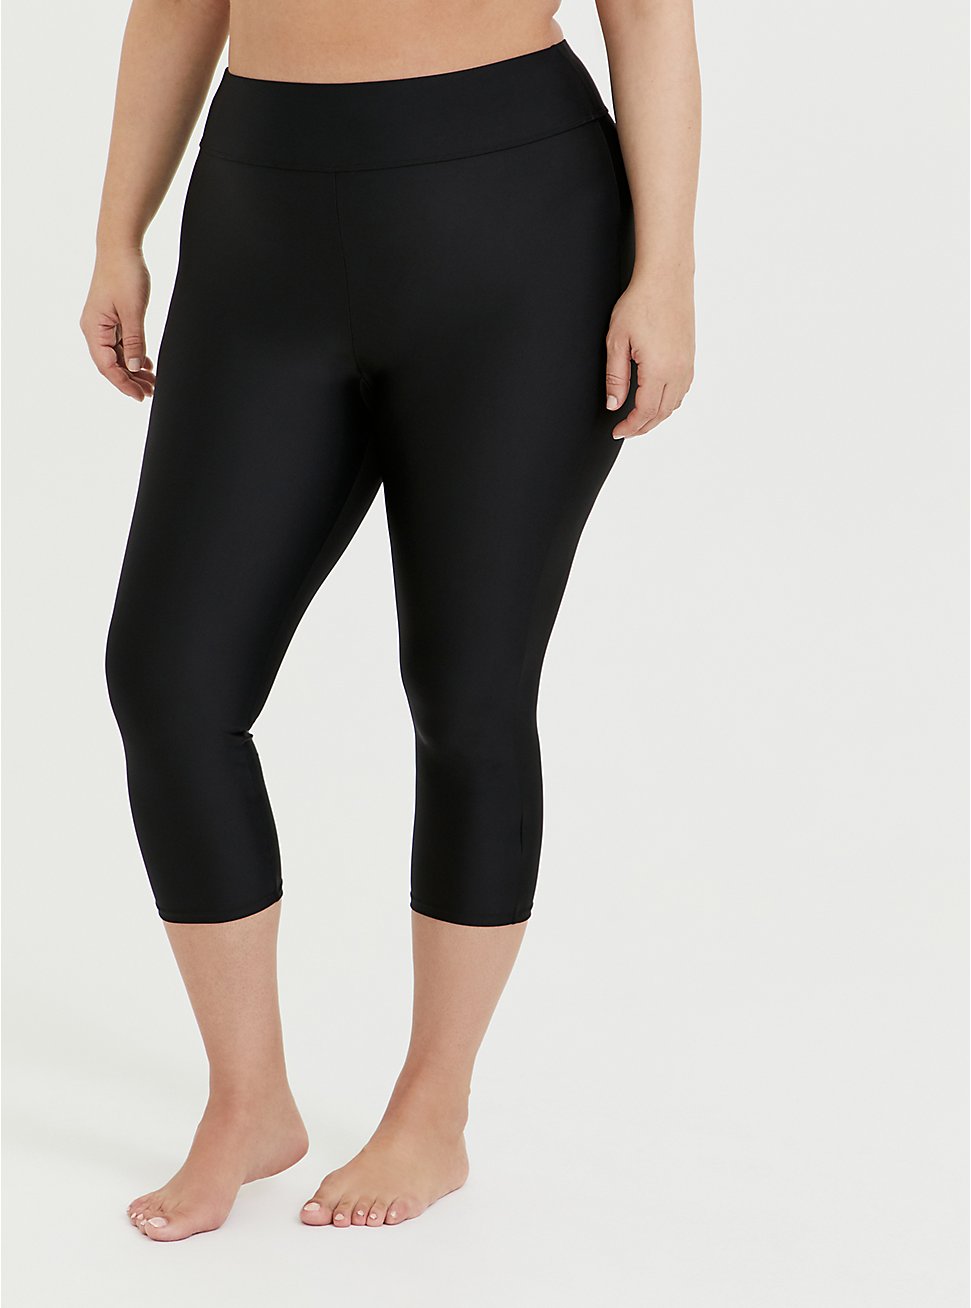 Plus Size Capri Swim Legging - Black, DEEP BLACK, hi-res